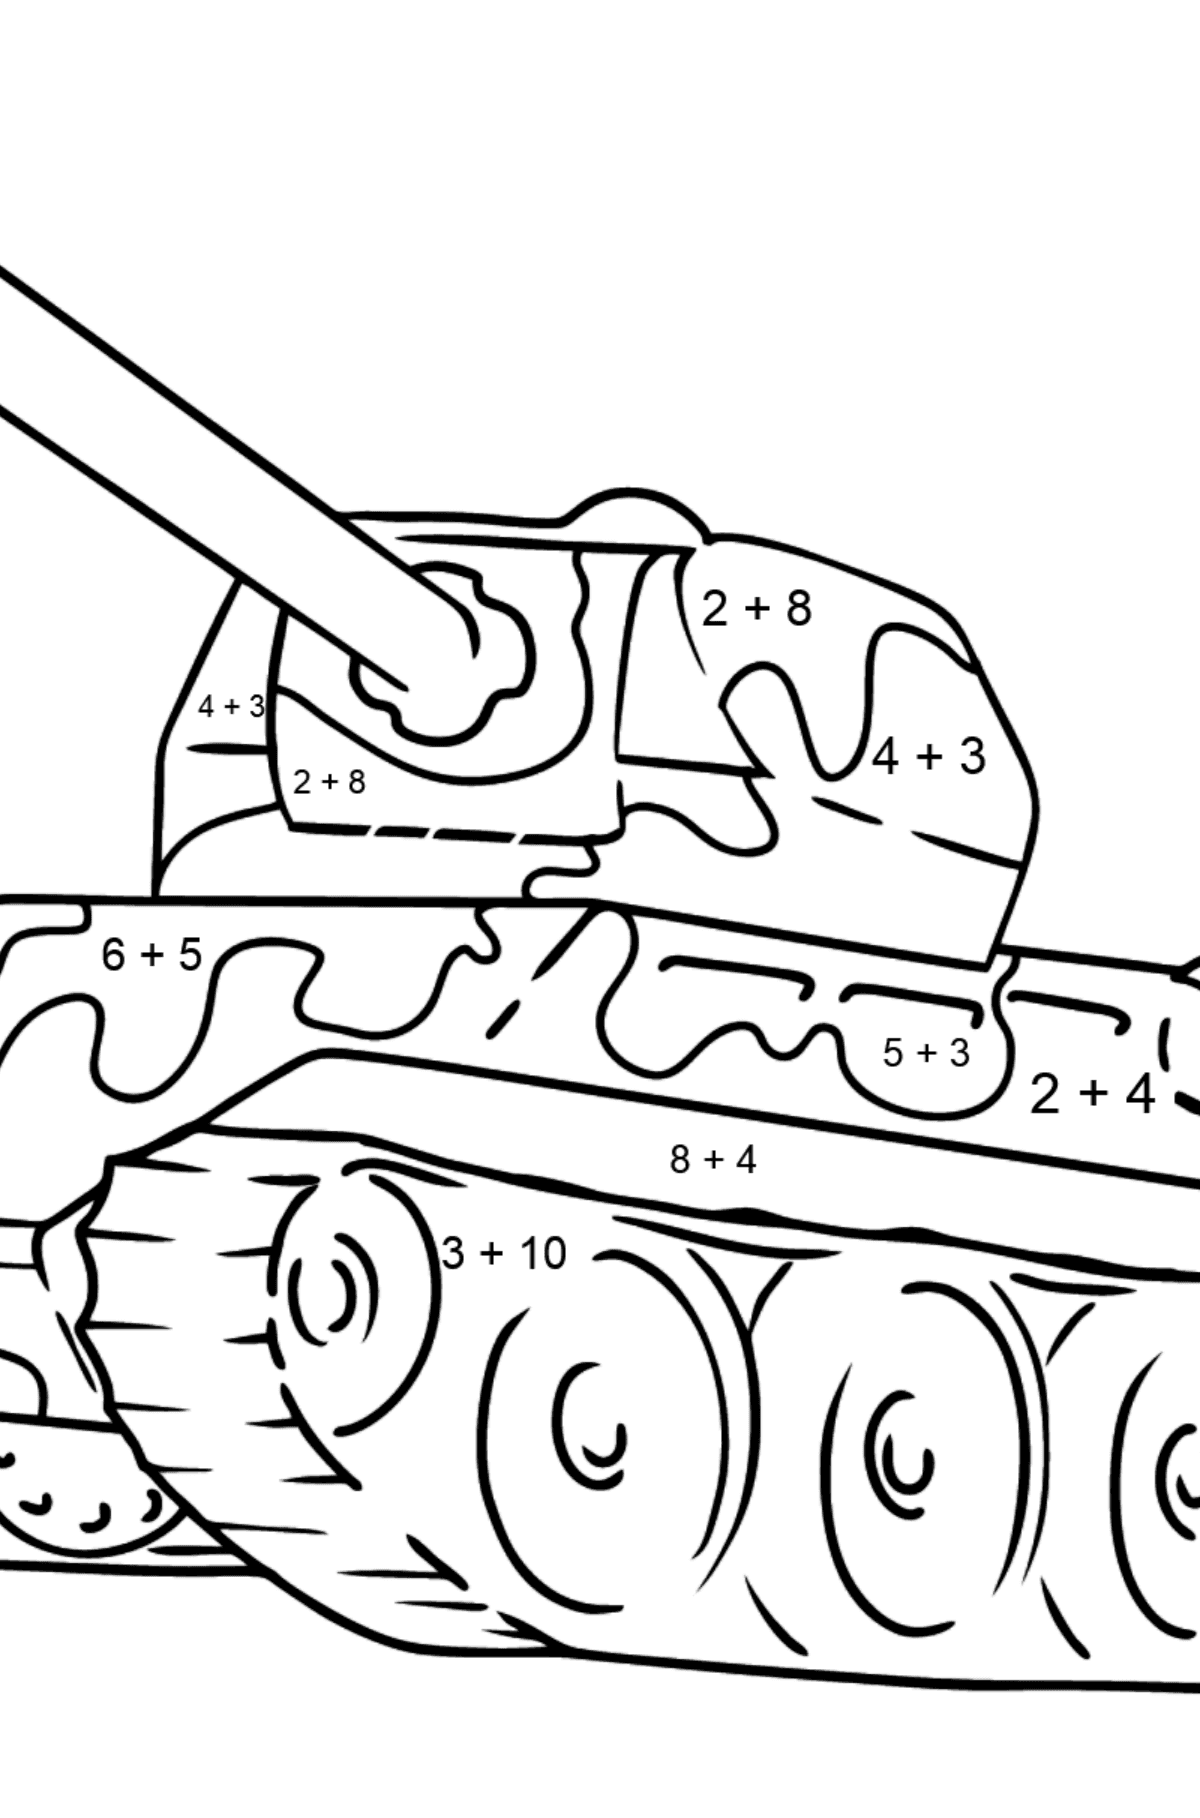 Desenho para colorir - tanque com arma antiaérea - Colorindo com Matemática - Soma para Crianças